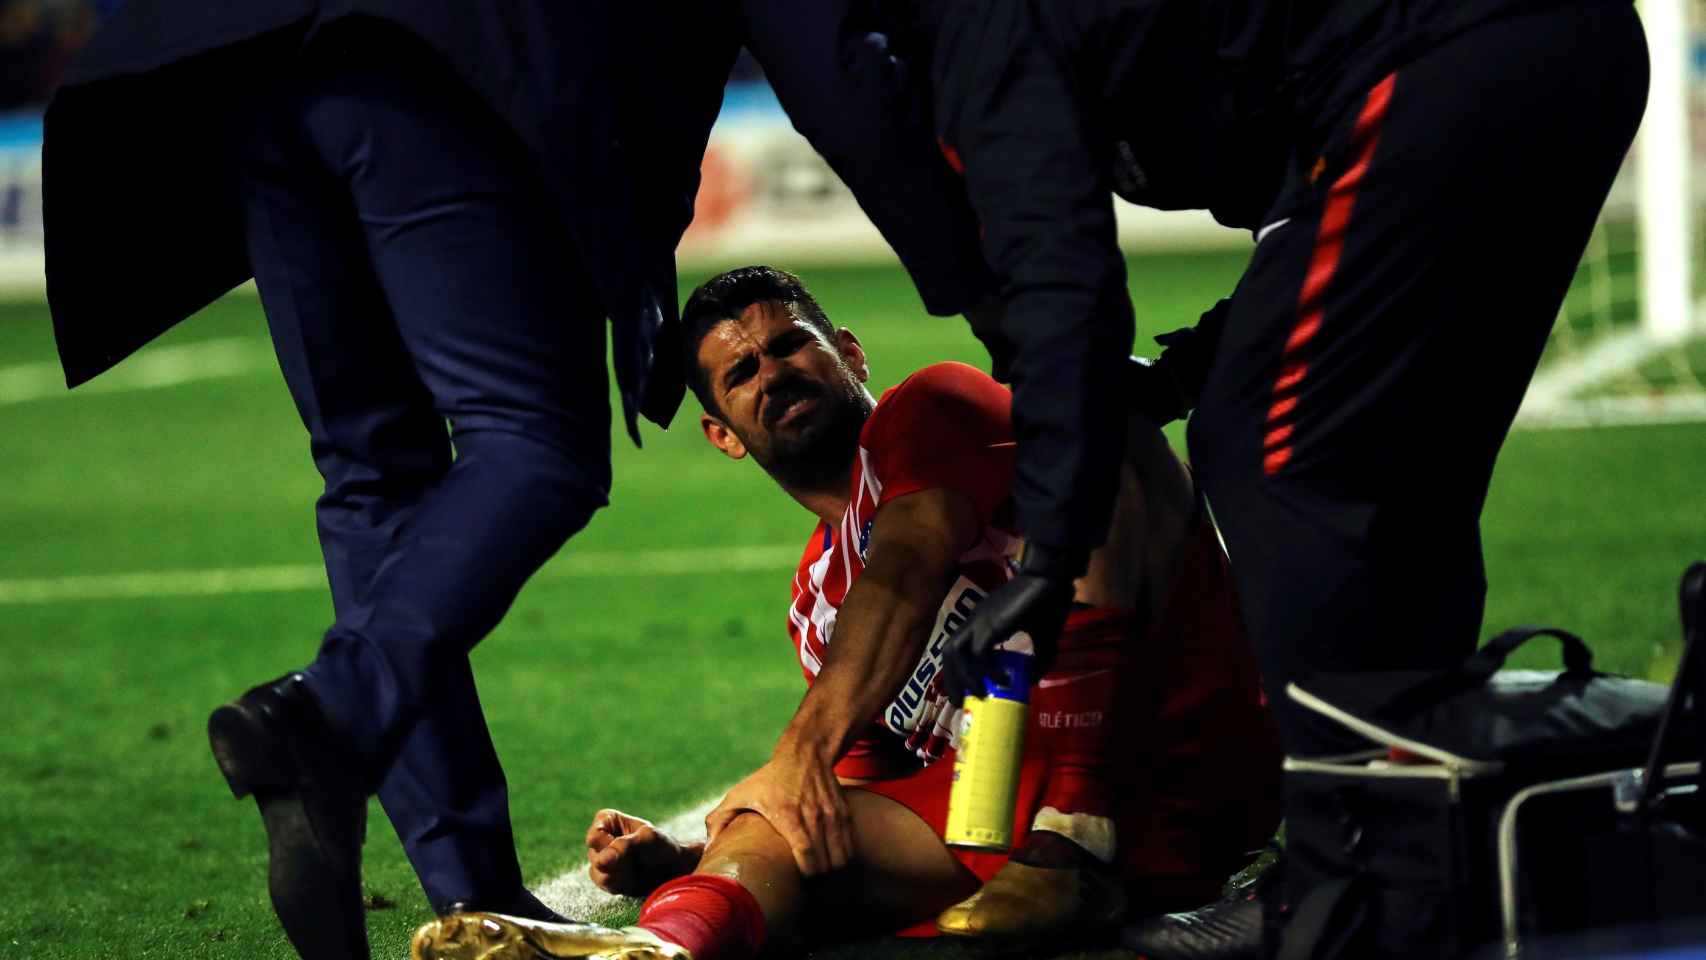 Diego costa estuvo a punto de lesionarse en la celebración de su gol. /Efe